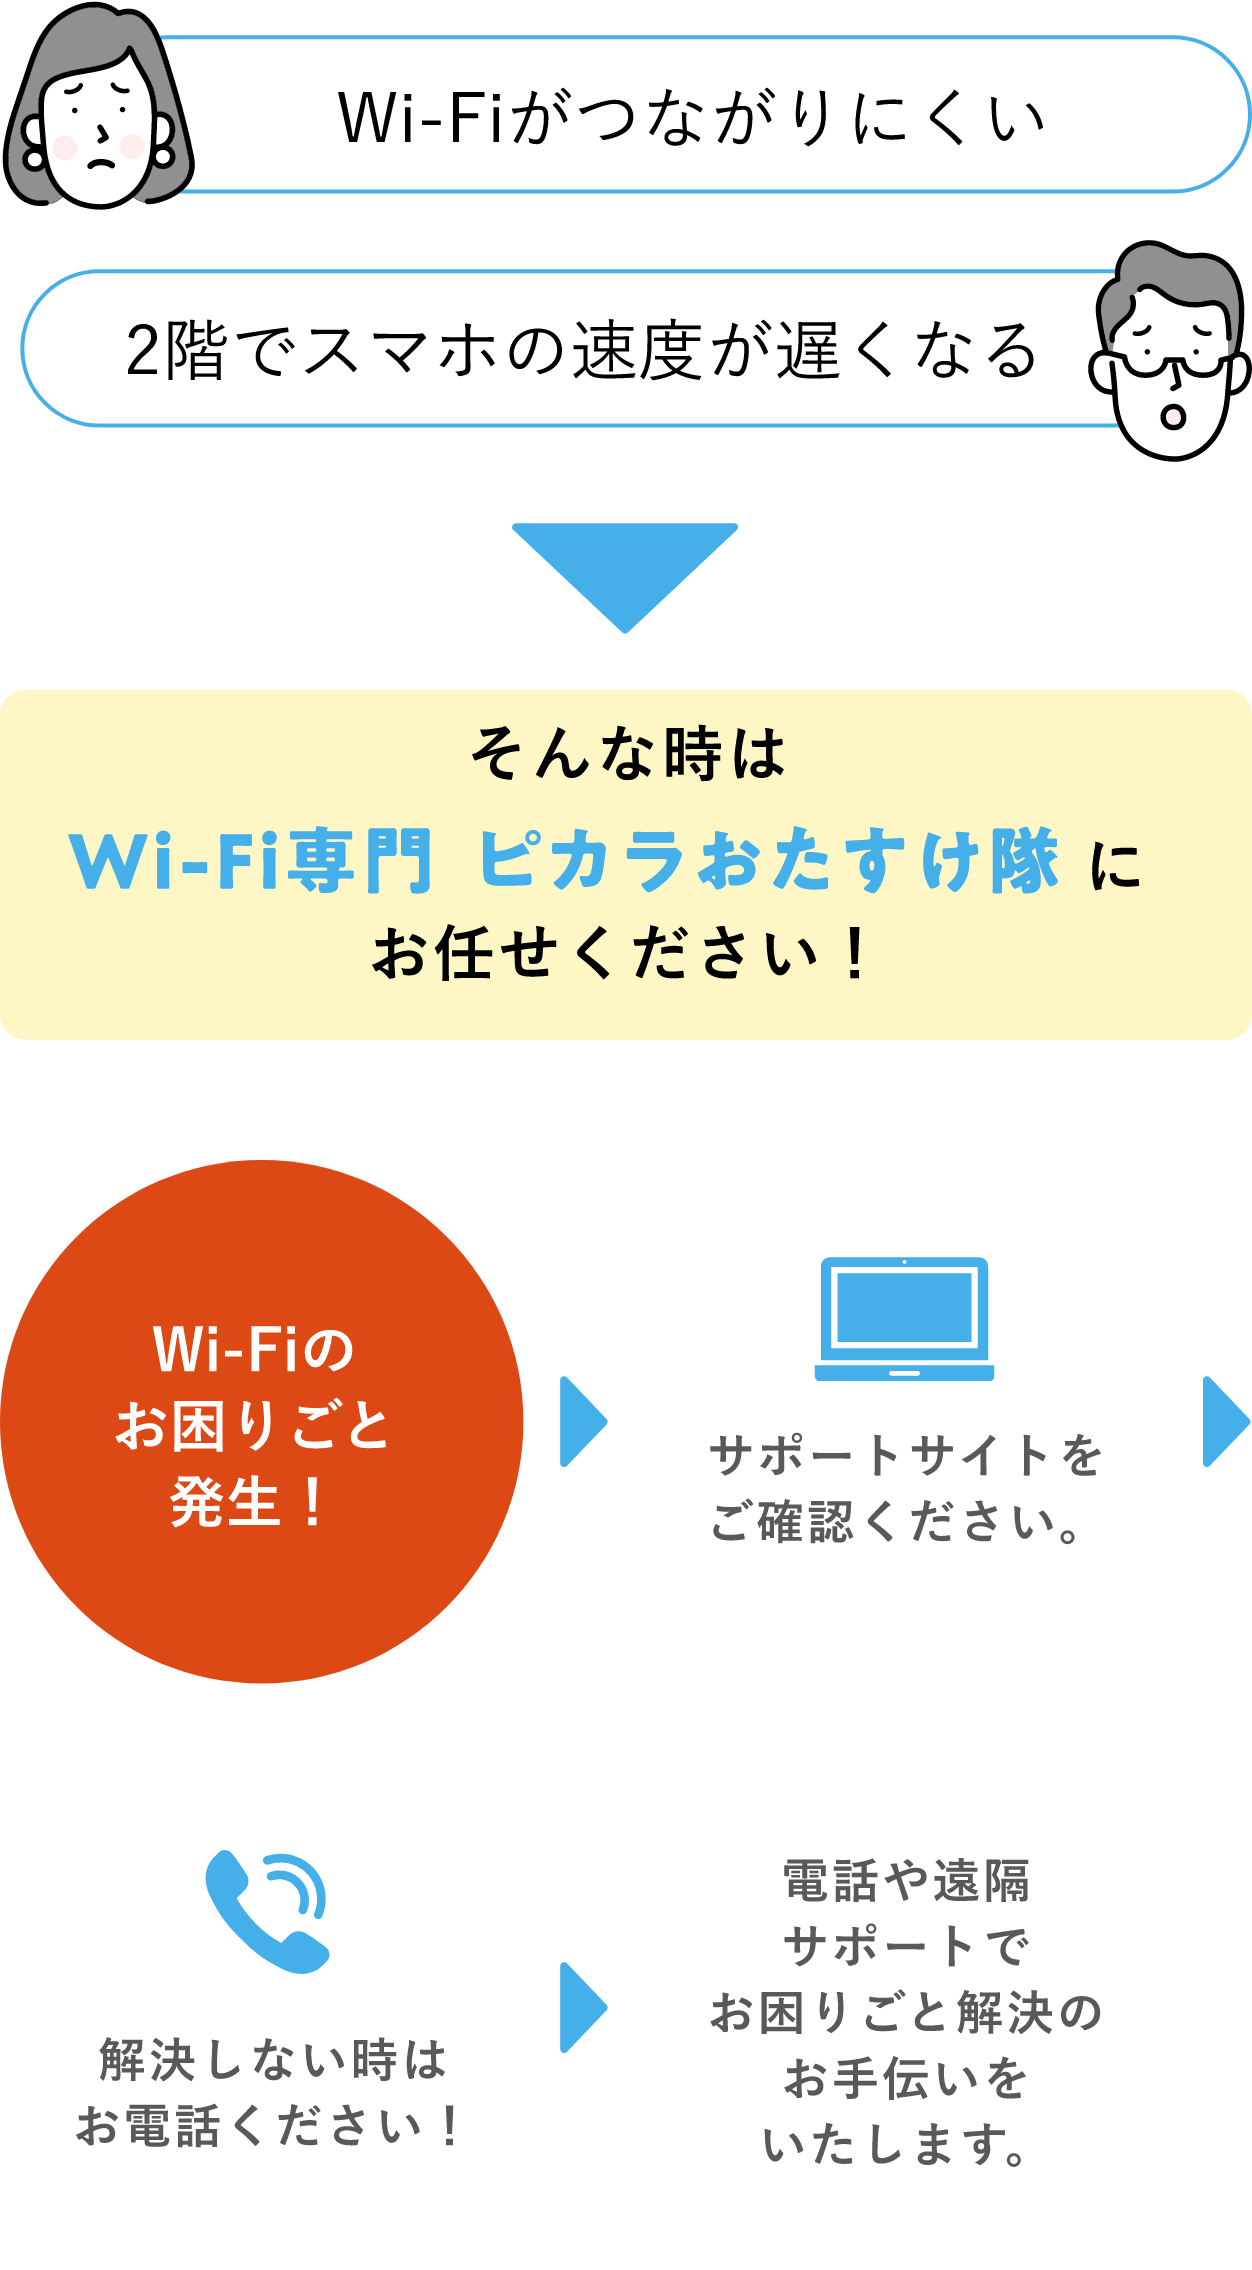 Wi-Fiがつながりにくい 2階でスマホの速度が遅くなる そんな時は Wi-Fi専門ピカラおたすけ隊にお任せください！Wi-Fiのお困りごと発生！サポートサイトをご確認ください。解決しない時はお電話ください！電話や遠隔サポートでお困りごと解決のお手伝いをいたします。